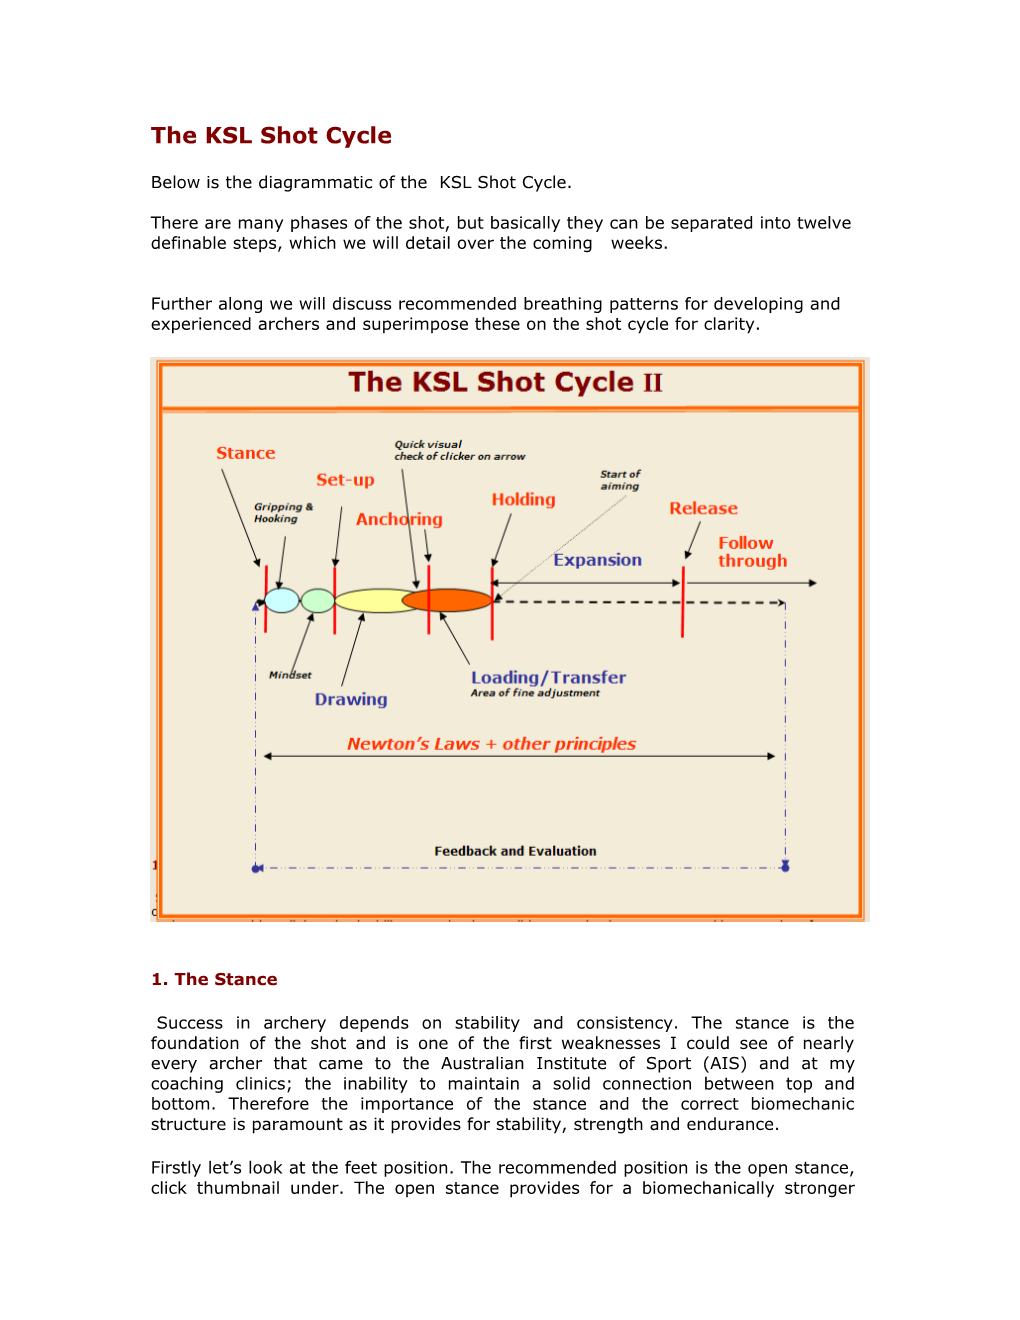 The KSL Shot Cycle